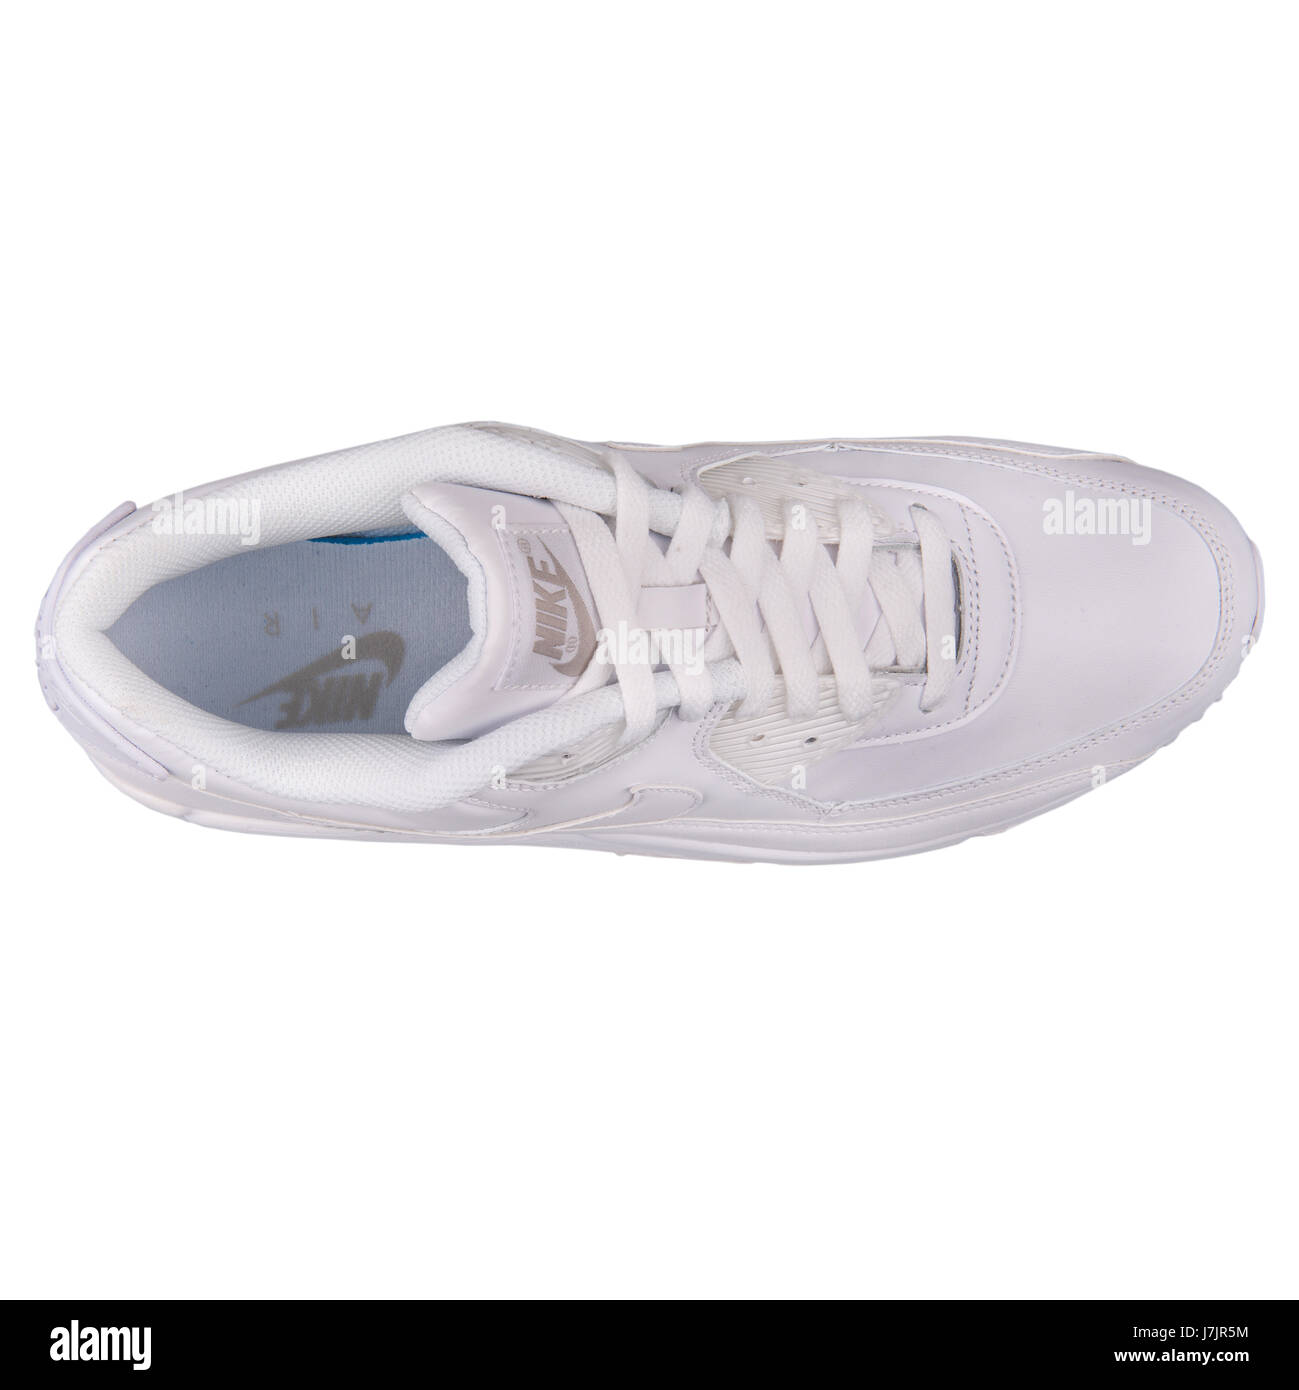 Nike Air Max 90 Hommes blanc cuir chaussures de sport en cuir - 302519-113  Photo Stock - Alamy